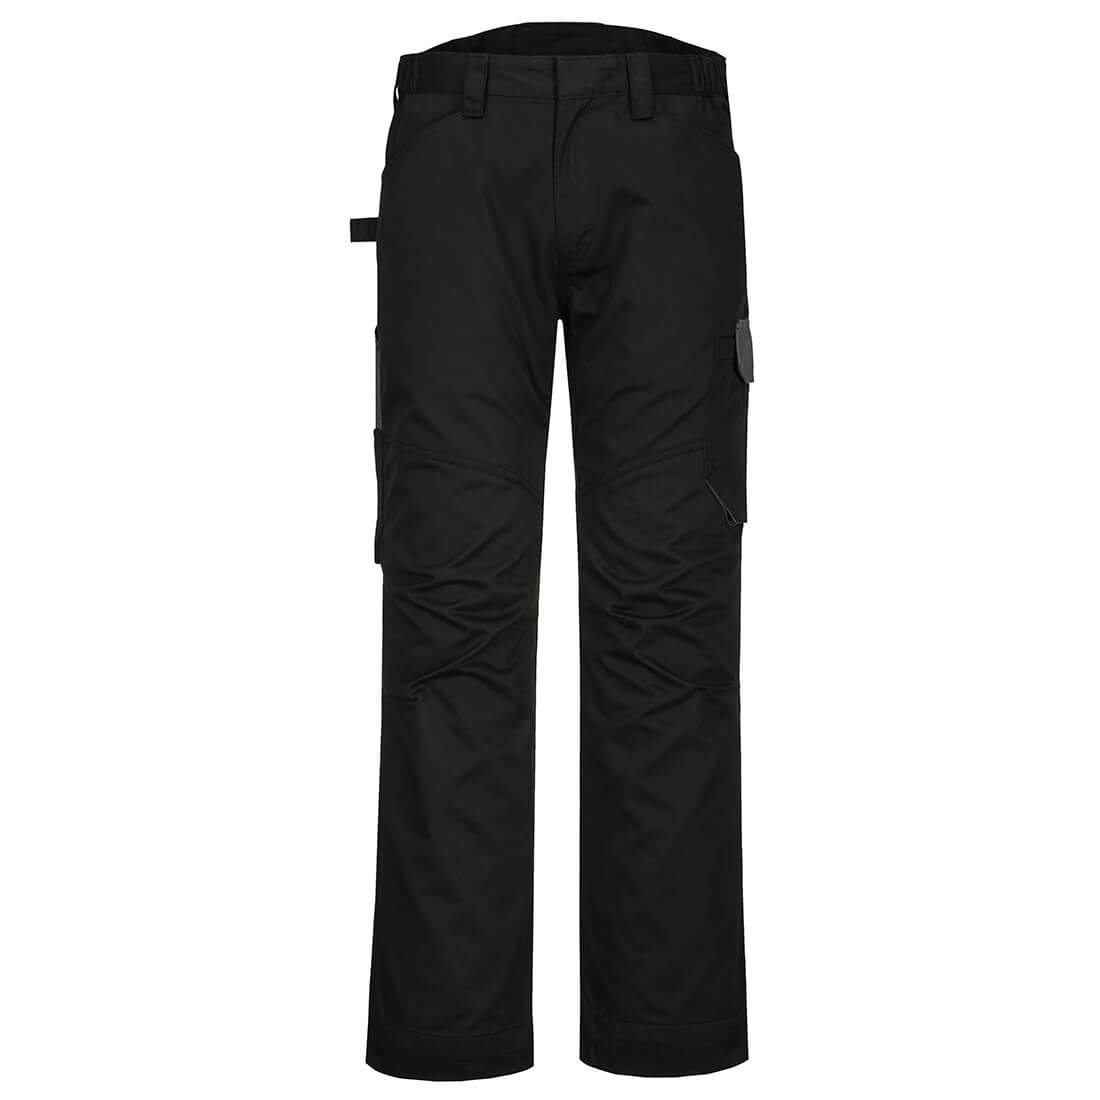 Pantalon de service PW2 - Les vêtements de protection